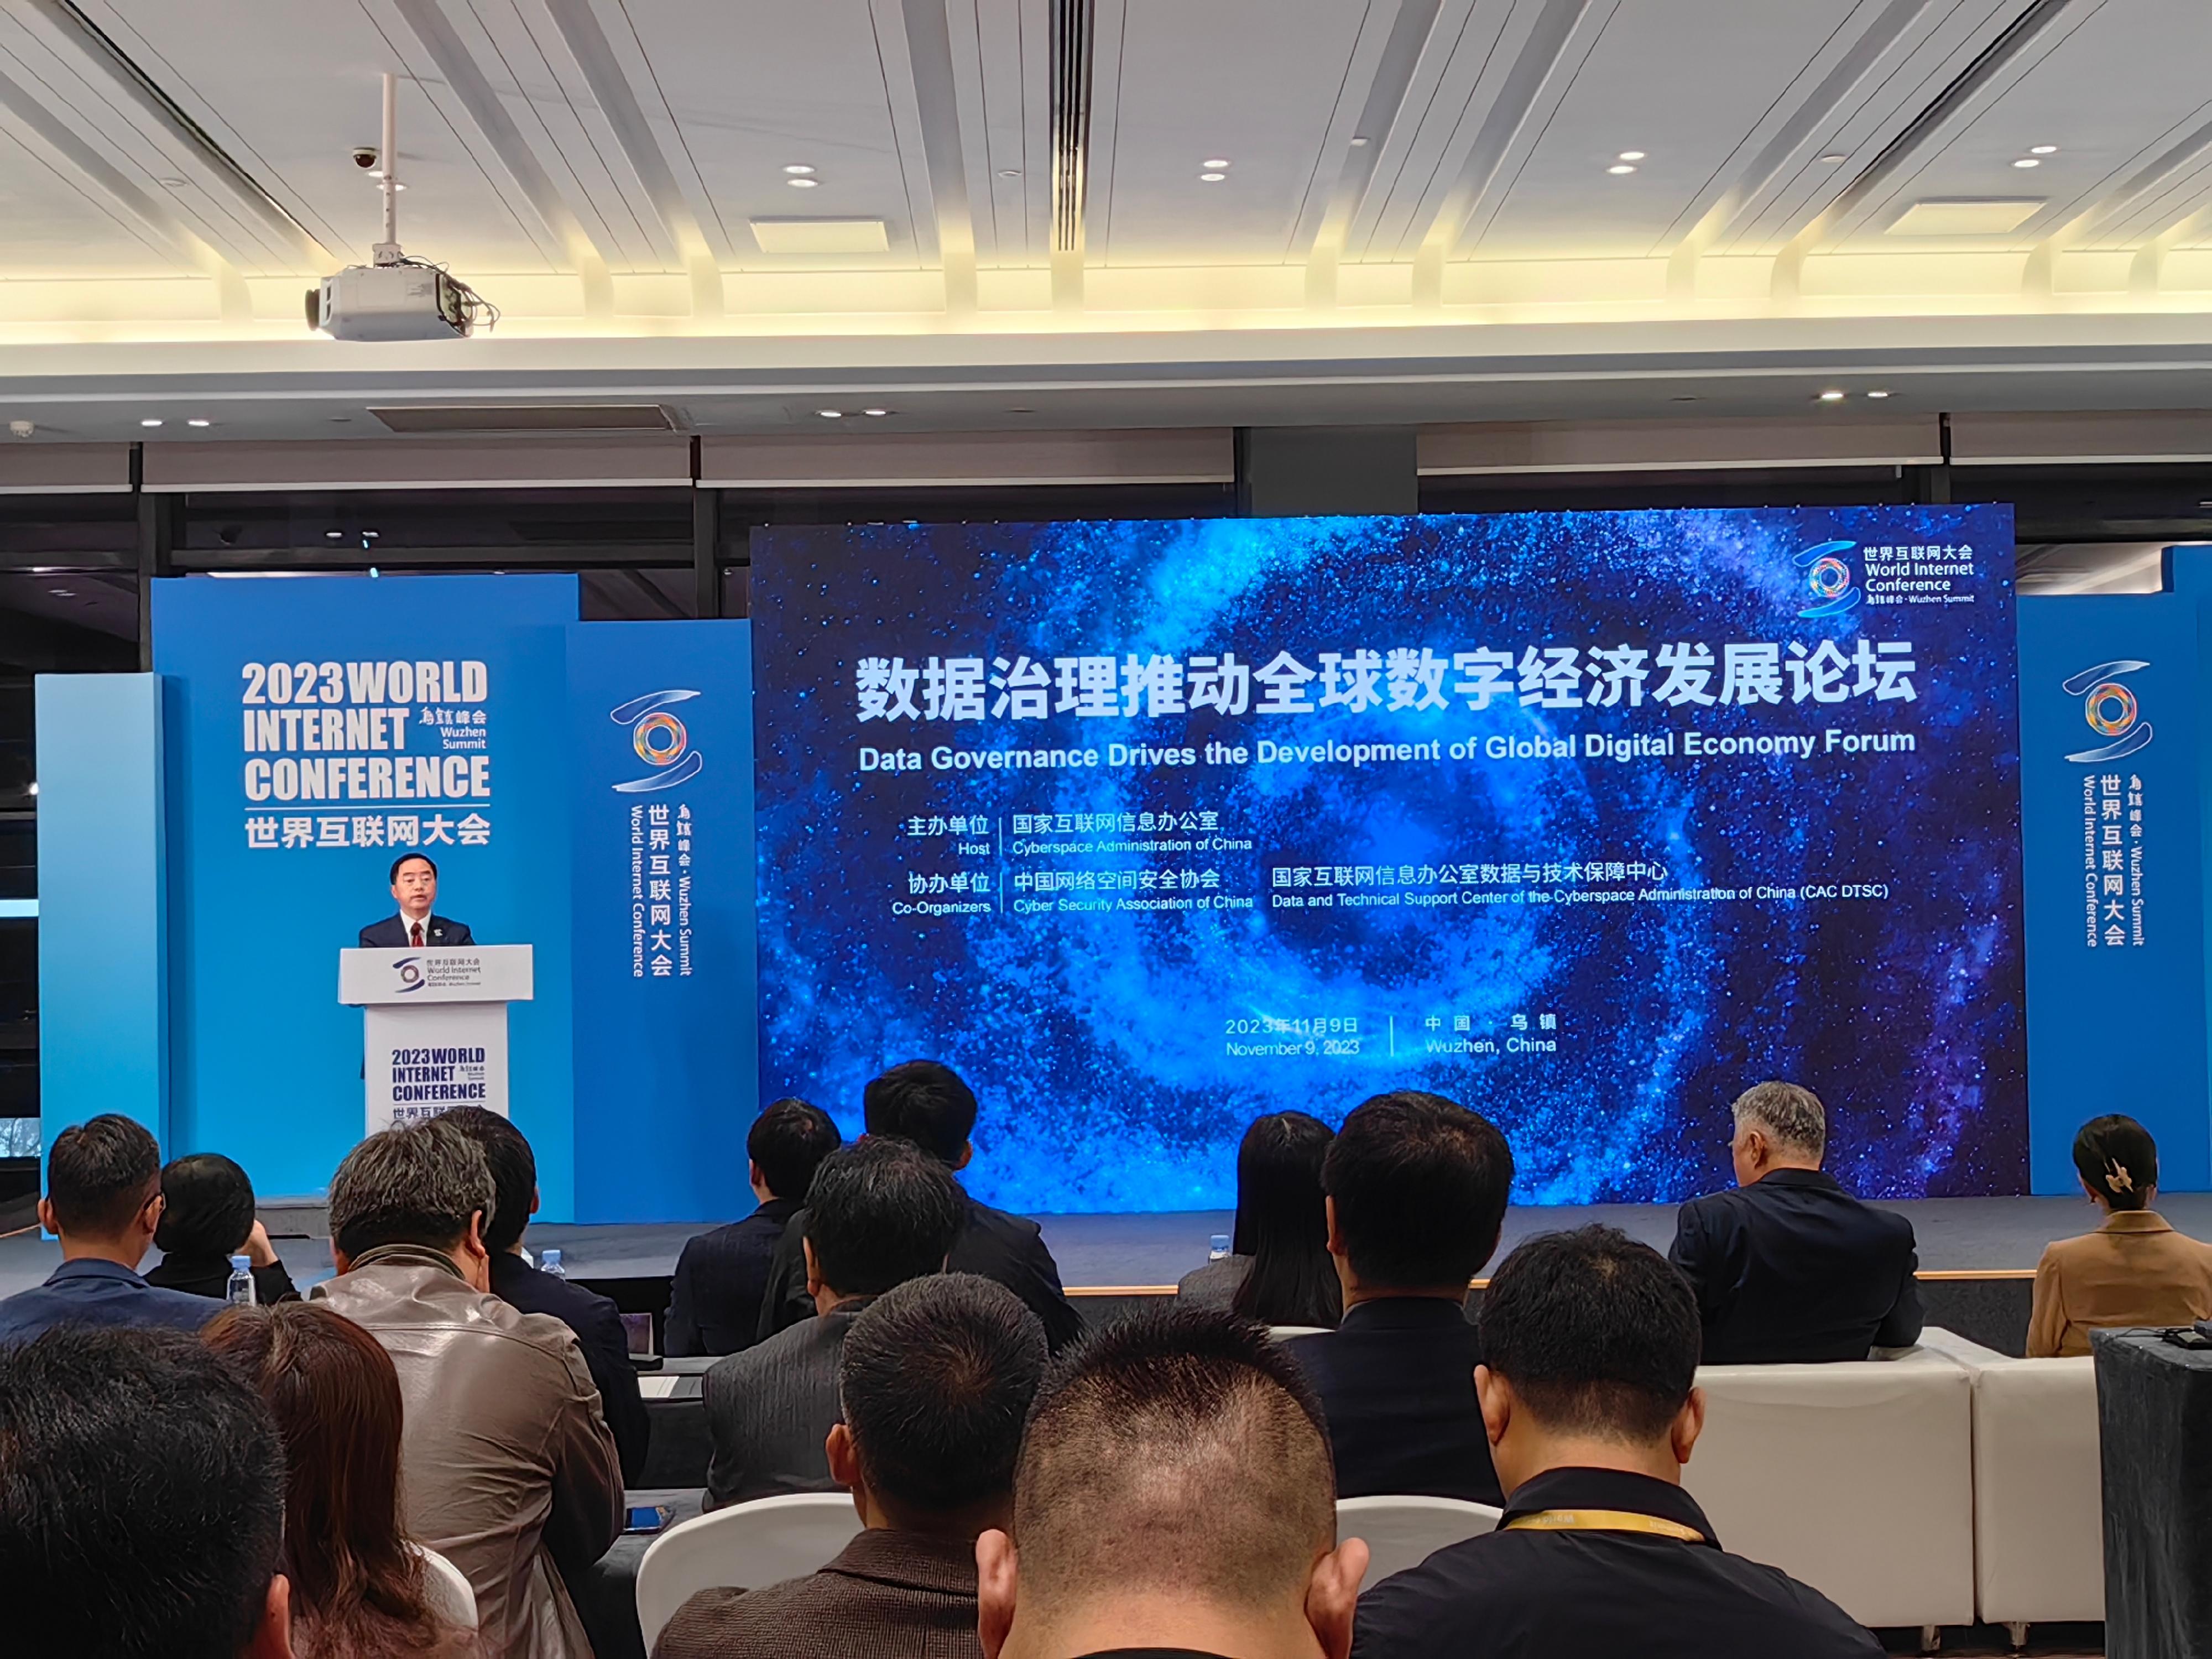 政府资讯科技总监黄志光今日（十一月九日）在浙江出席2023年世界互联网大会乌镇峰会，并于「数据治理推动全球数字经济发展论坛」致辞。